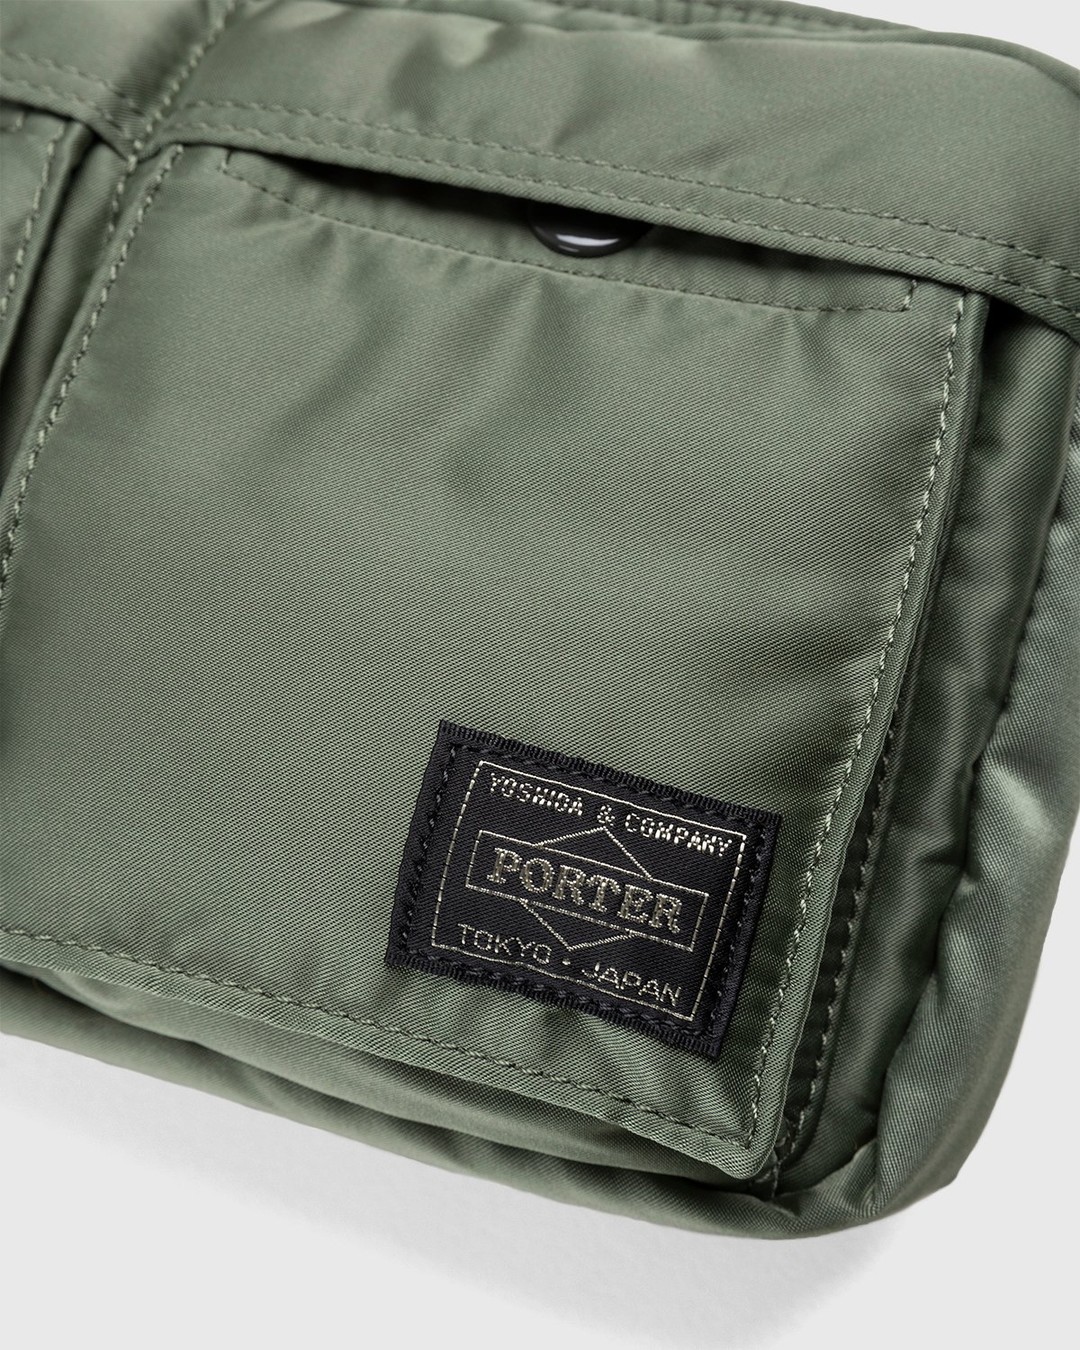 Porter-Yoshida & Co. Tanker Shoulder Bag Sage